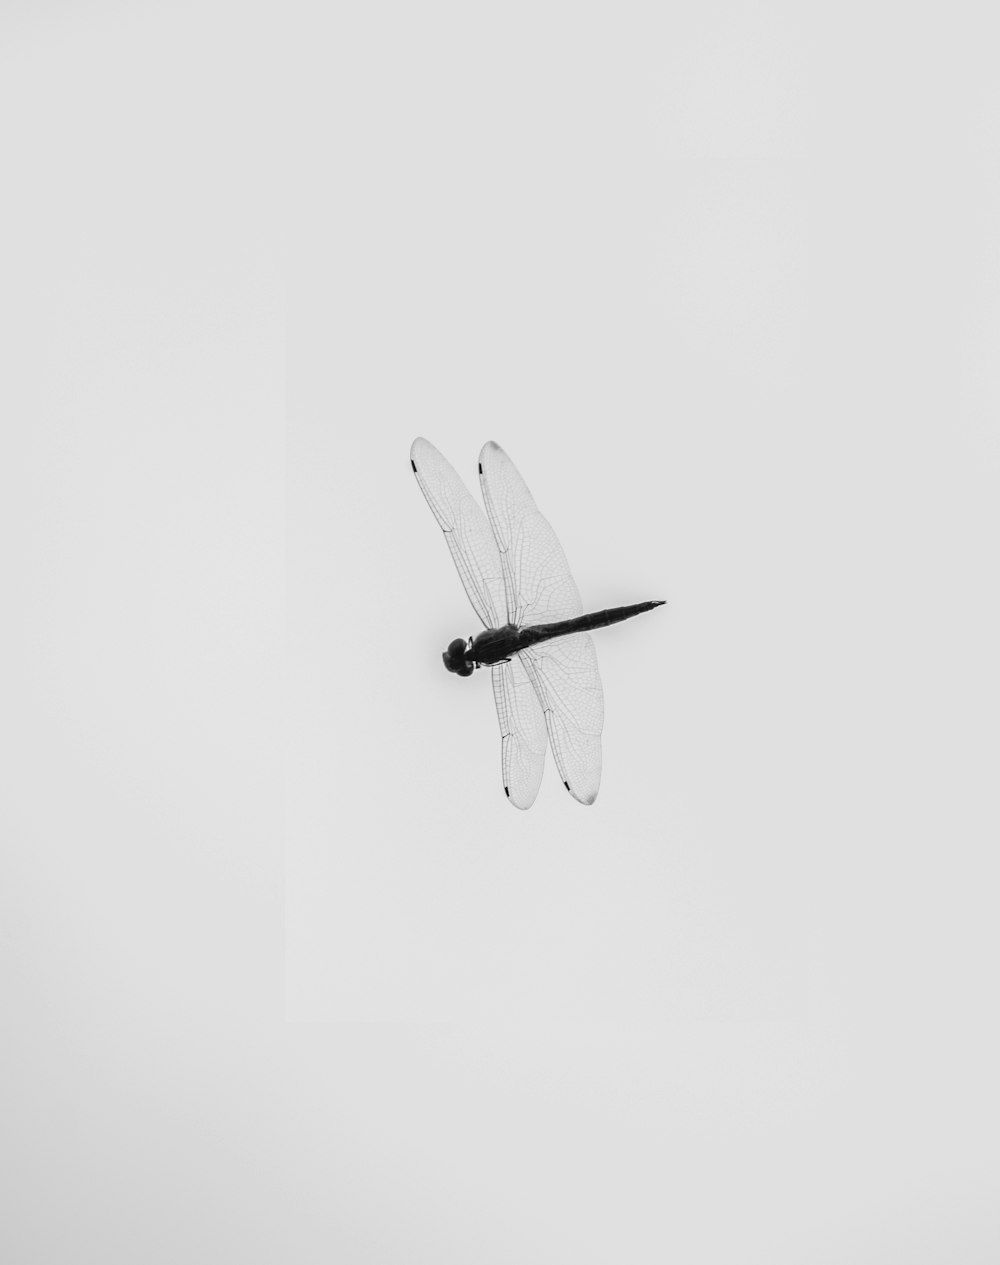 Una foto in bianco e nero di una libellula